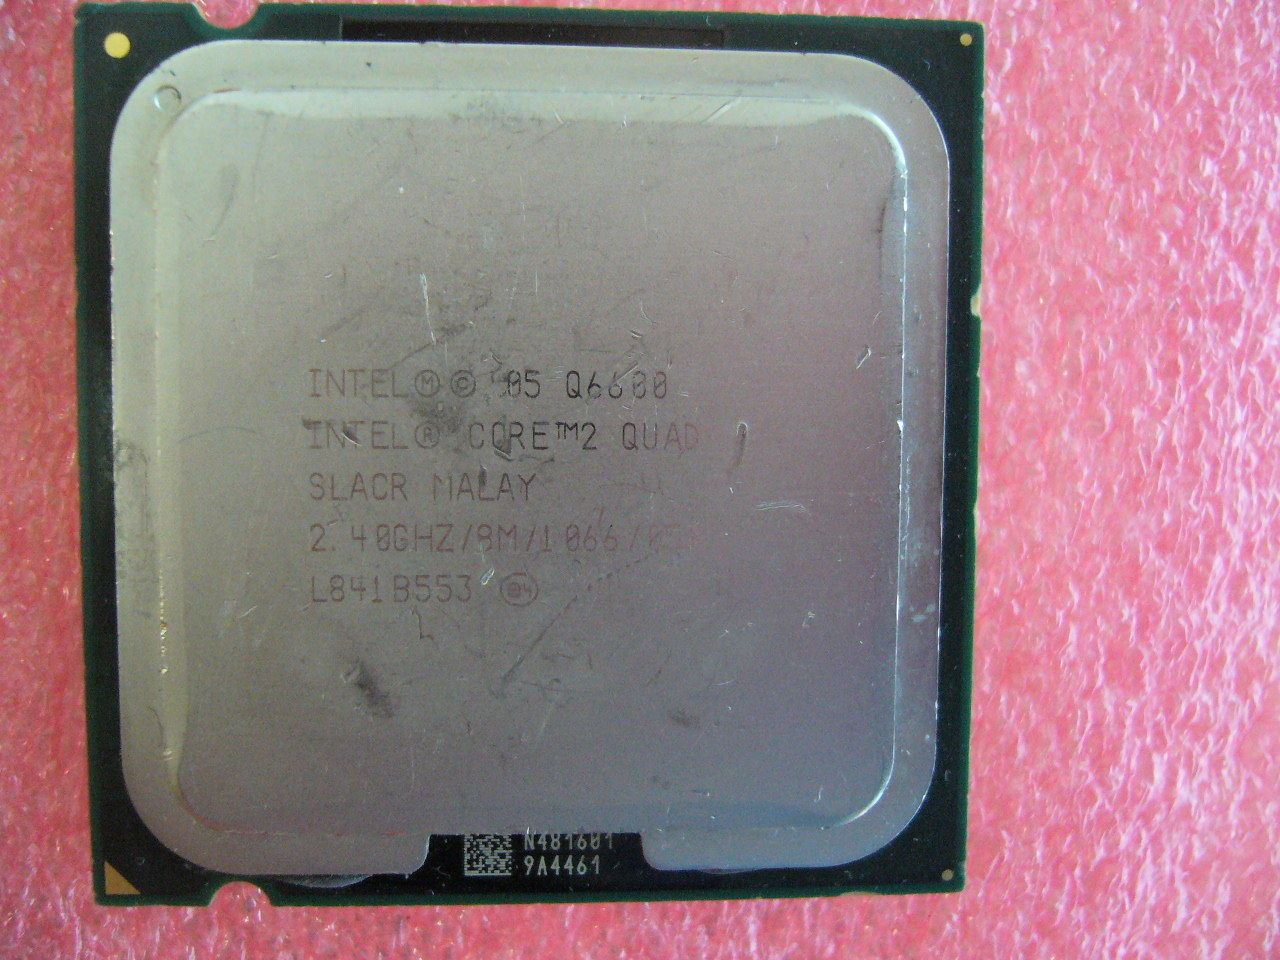 QTY 1x INTEL Core2 Quad Q6600 CPU 2.40GHz/8MB/1066Mhz LGA775 SLACR - zum Schließen ins Bild klicken